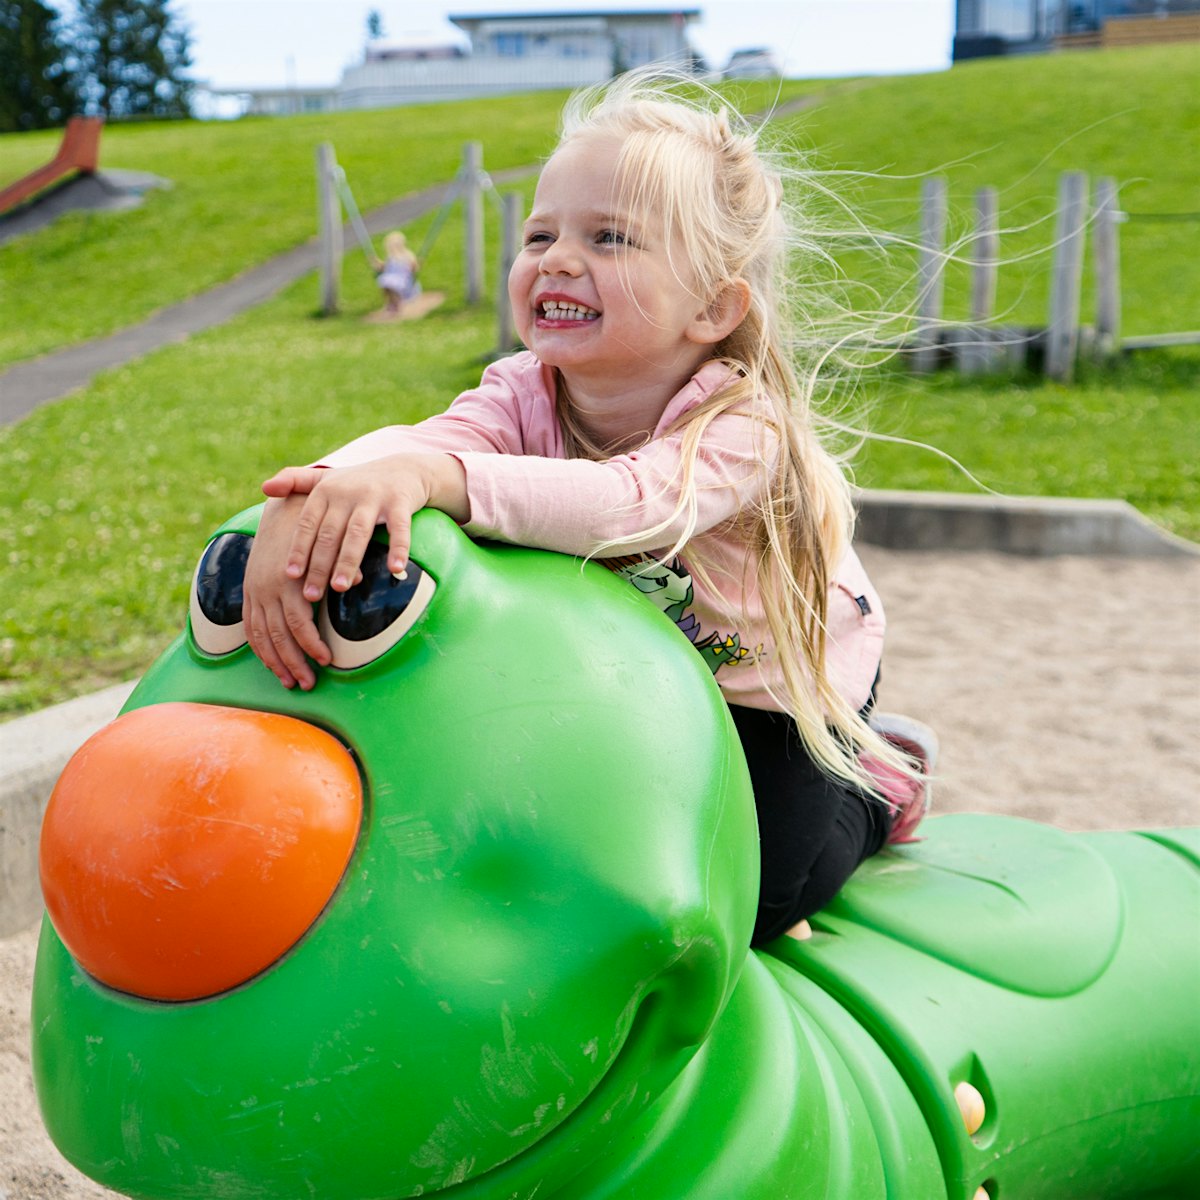 Girl on toy caterpillar on playground. Photo